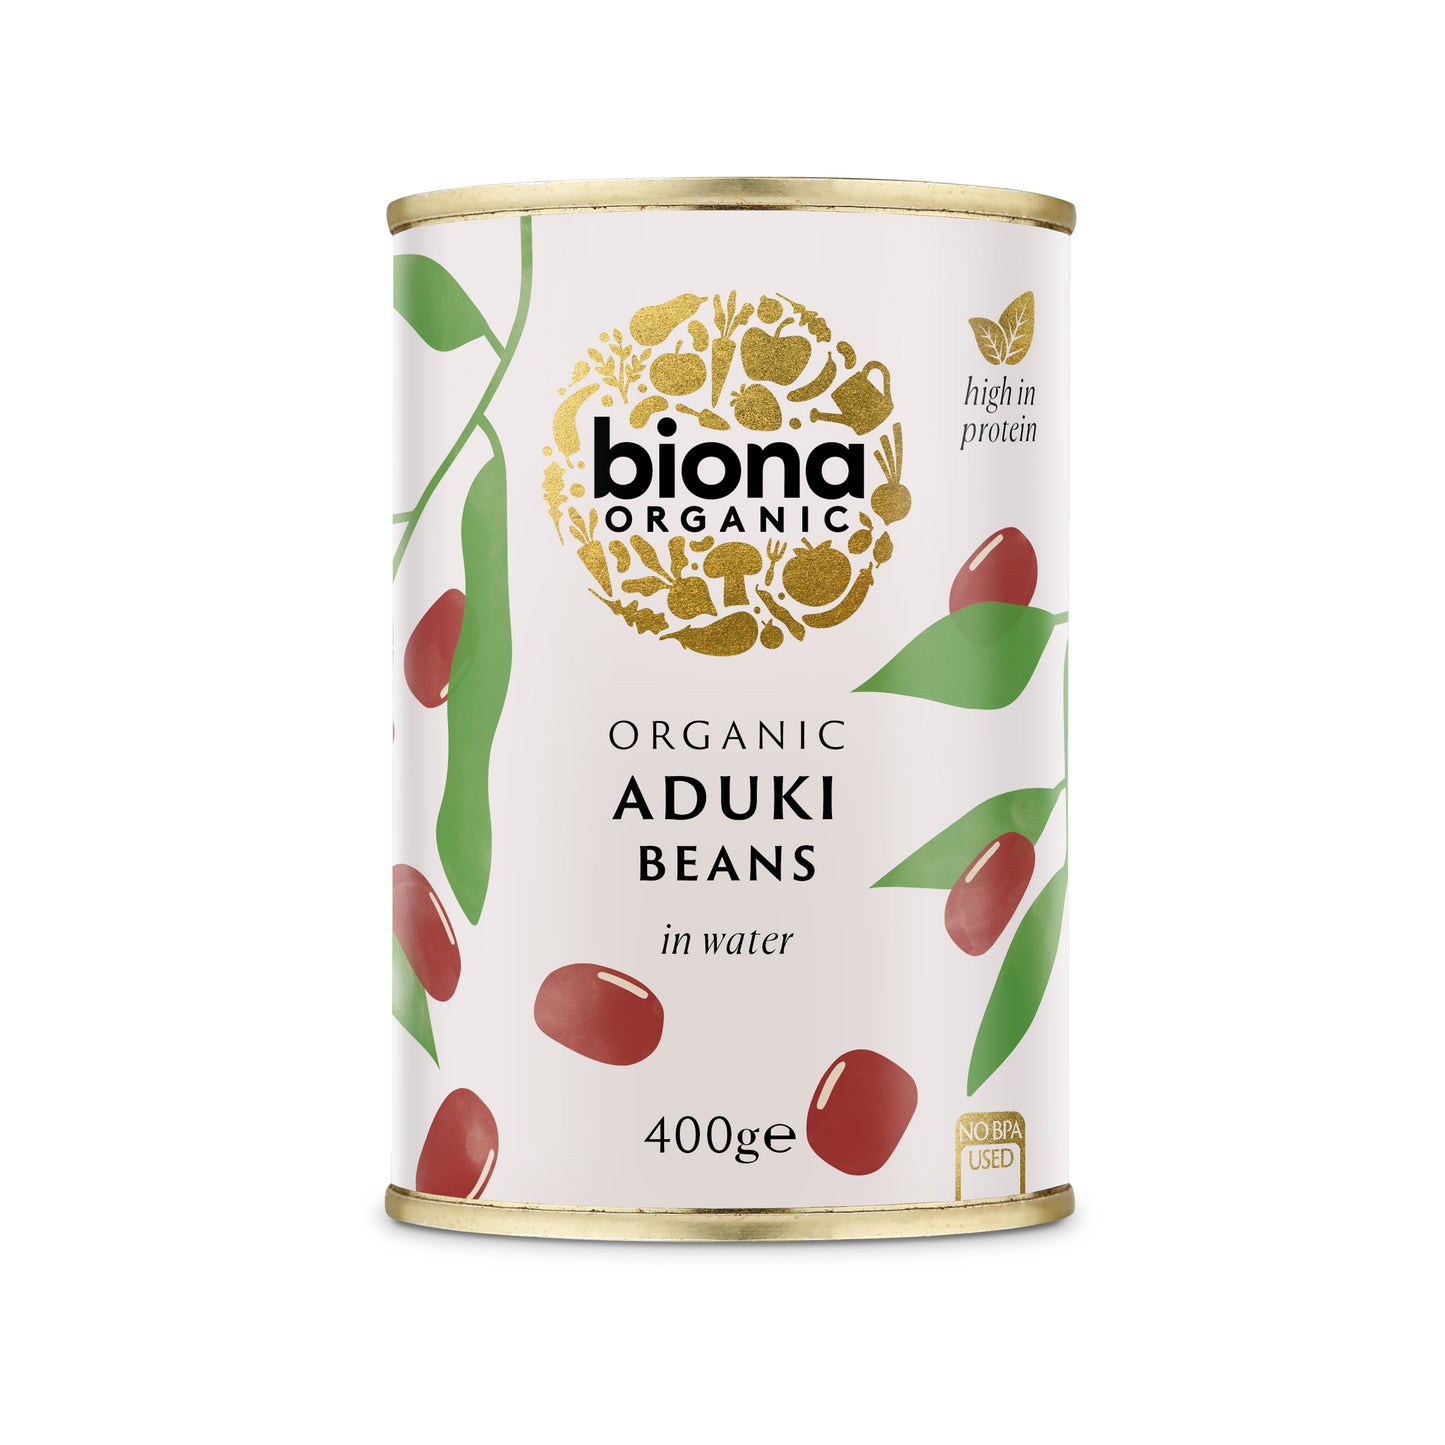 Aduki Beans (Org) 14007A